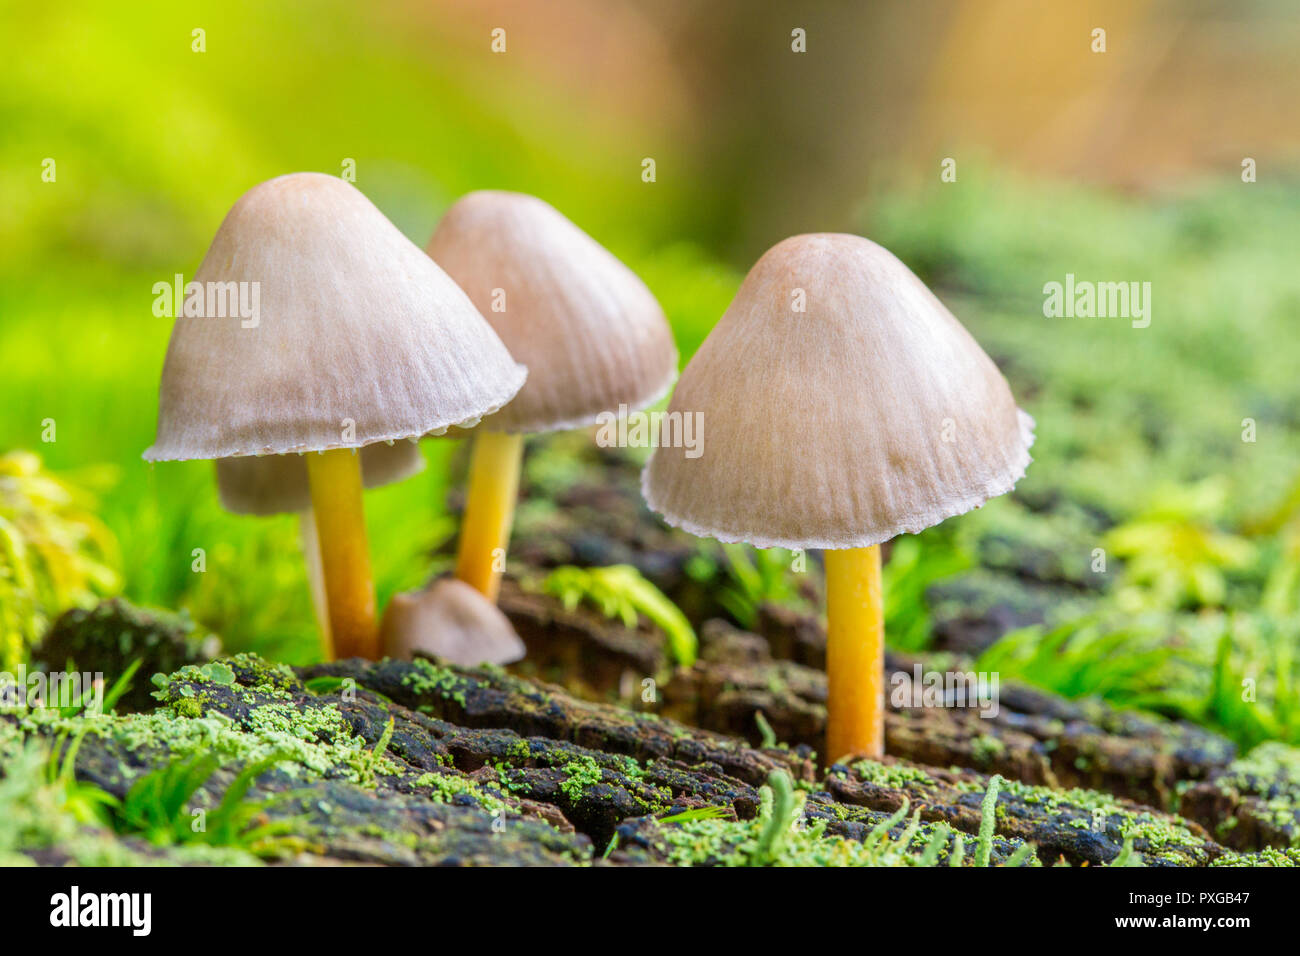 Groupe de petits champignons avec tiges jaunes dans la forêt Banque D'Images